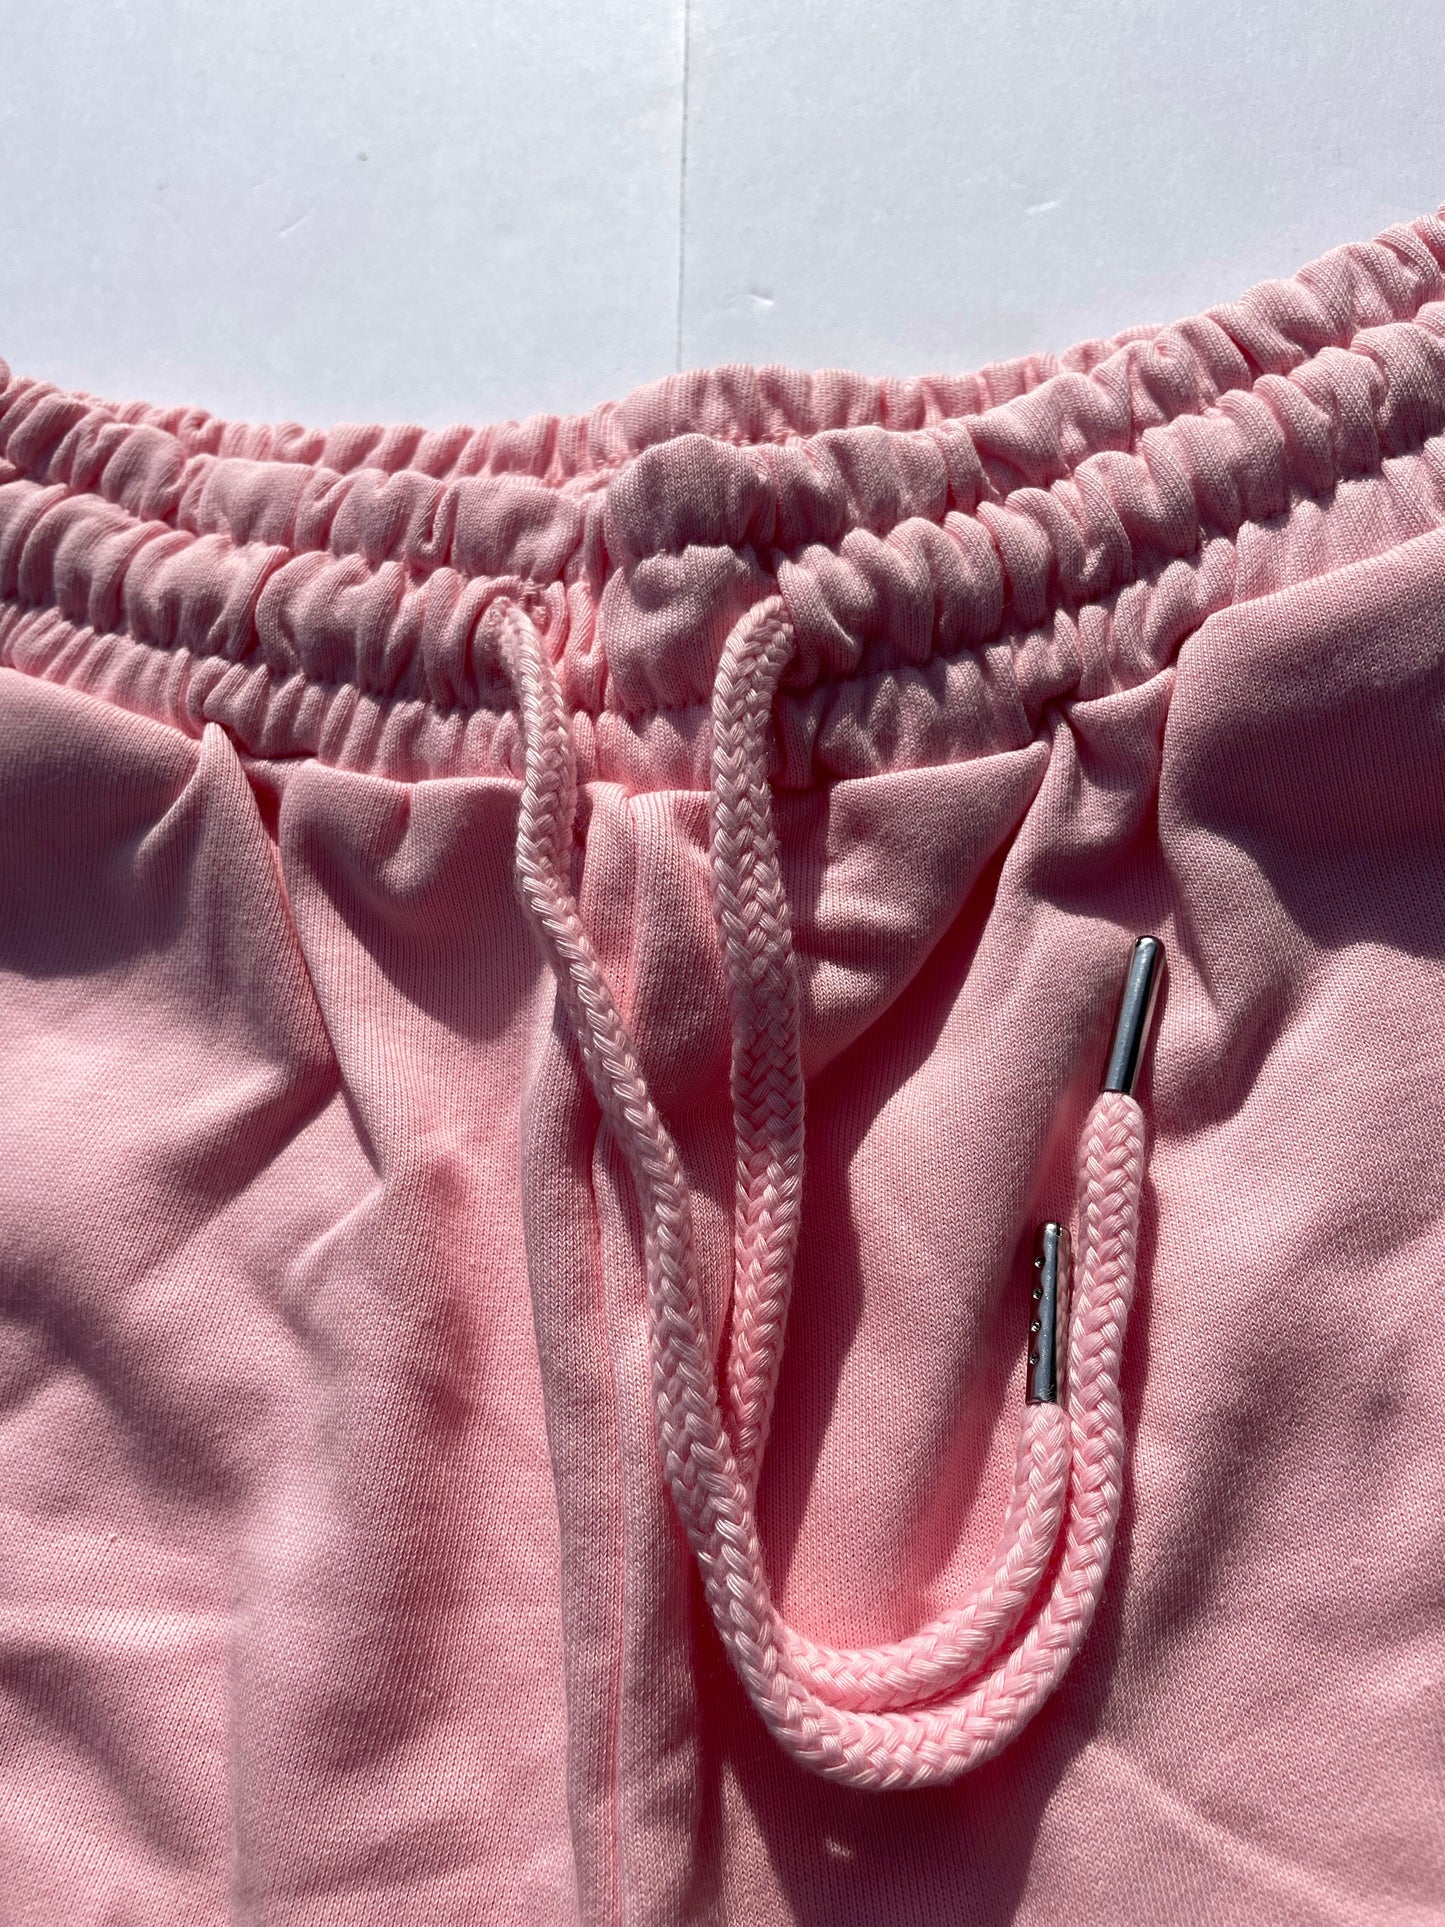 Chosen Shorts (Pink, White)